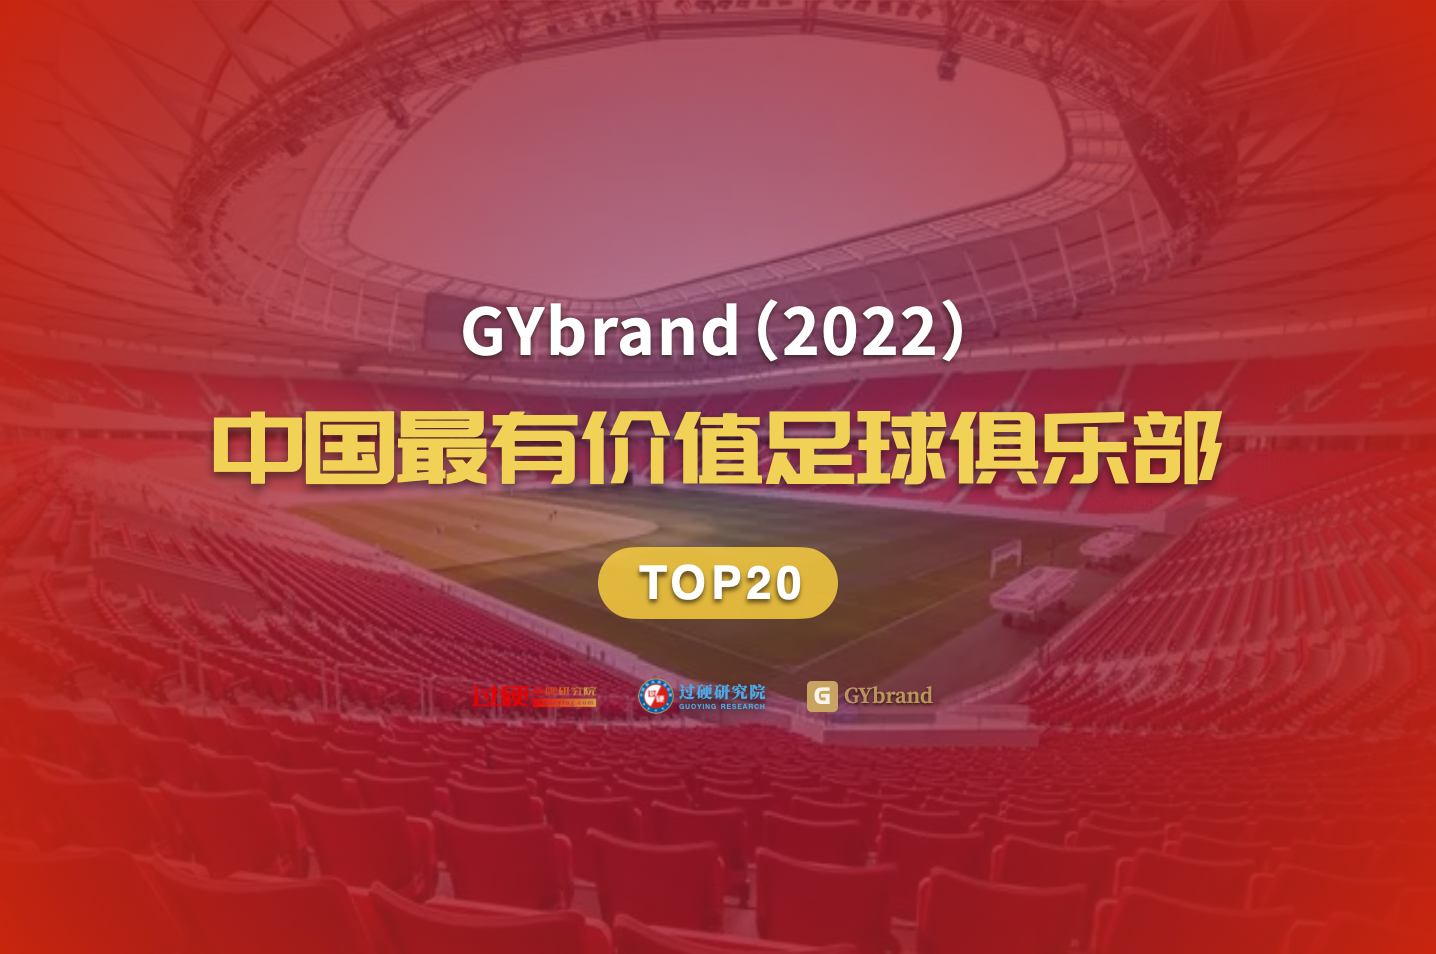 2022中国最有价值足球俱乐部20强排名:武汉暴涨,广州跌至谷底